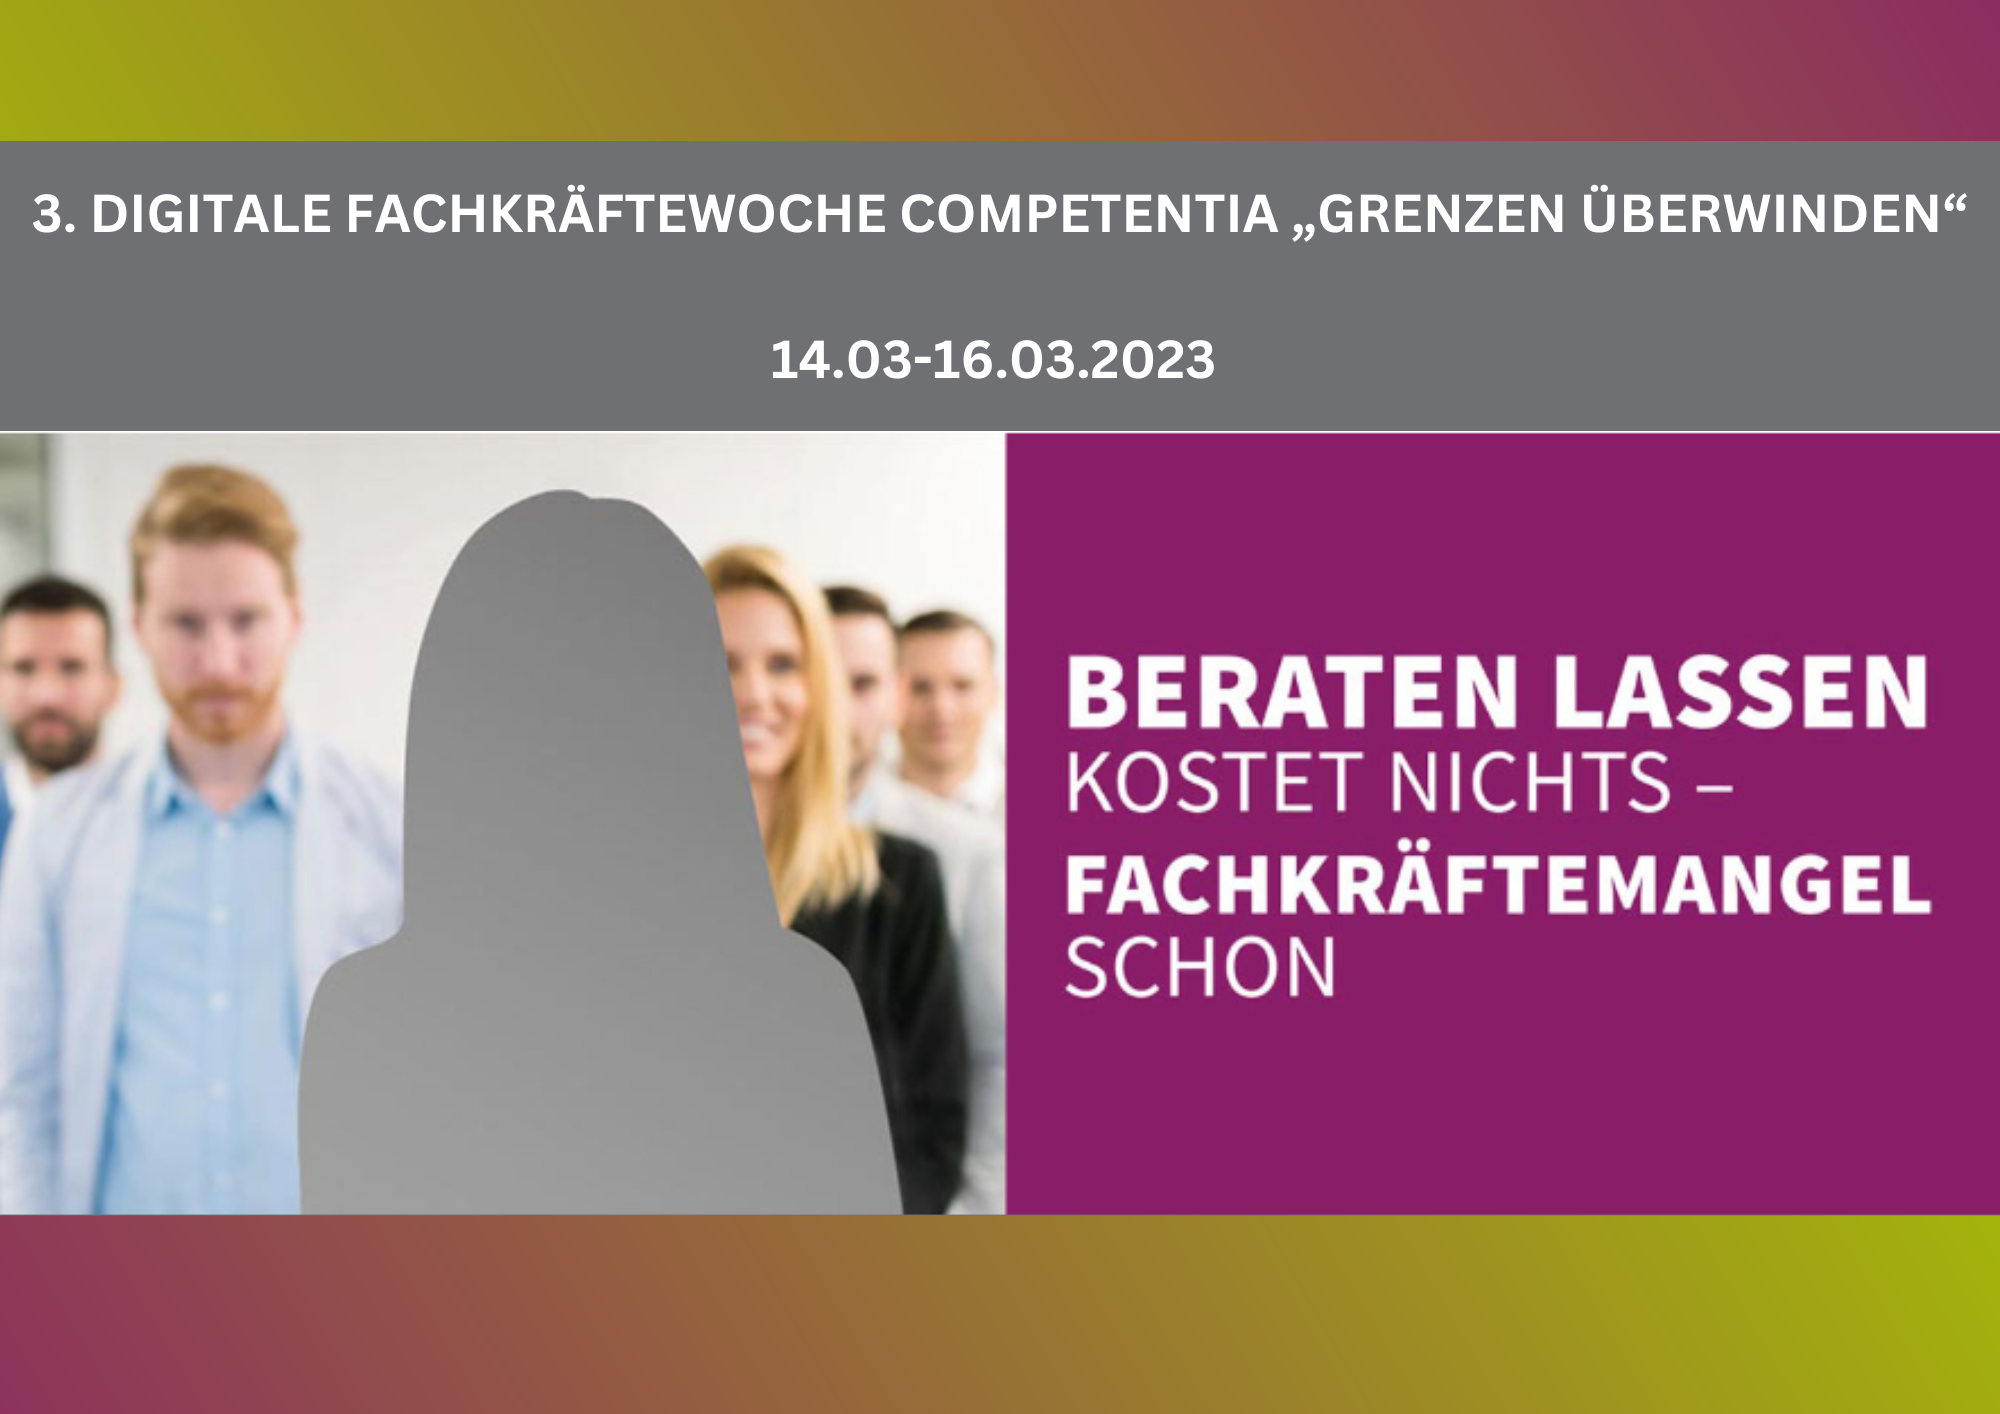 Fachkräftewoche Competentia NRW, 14.03.-16.03.2023